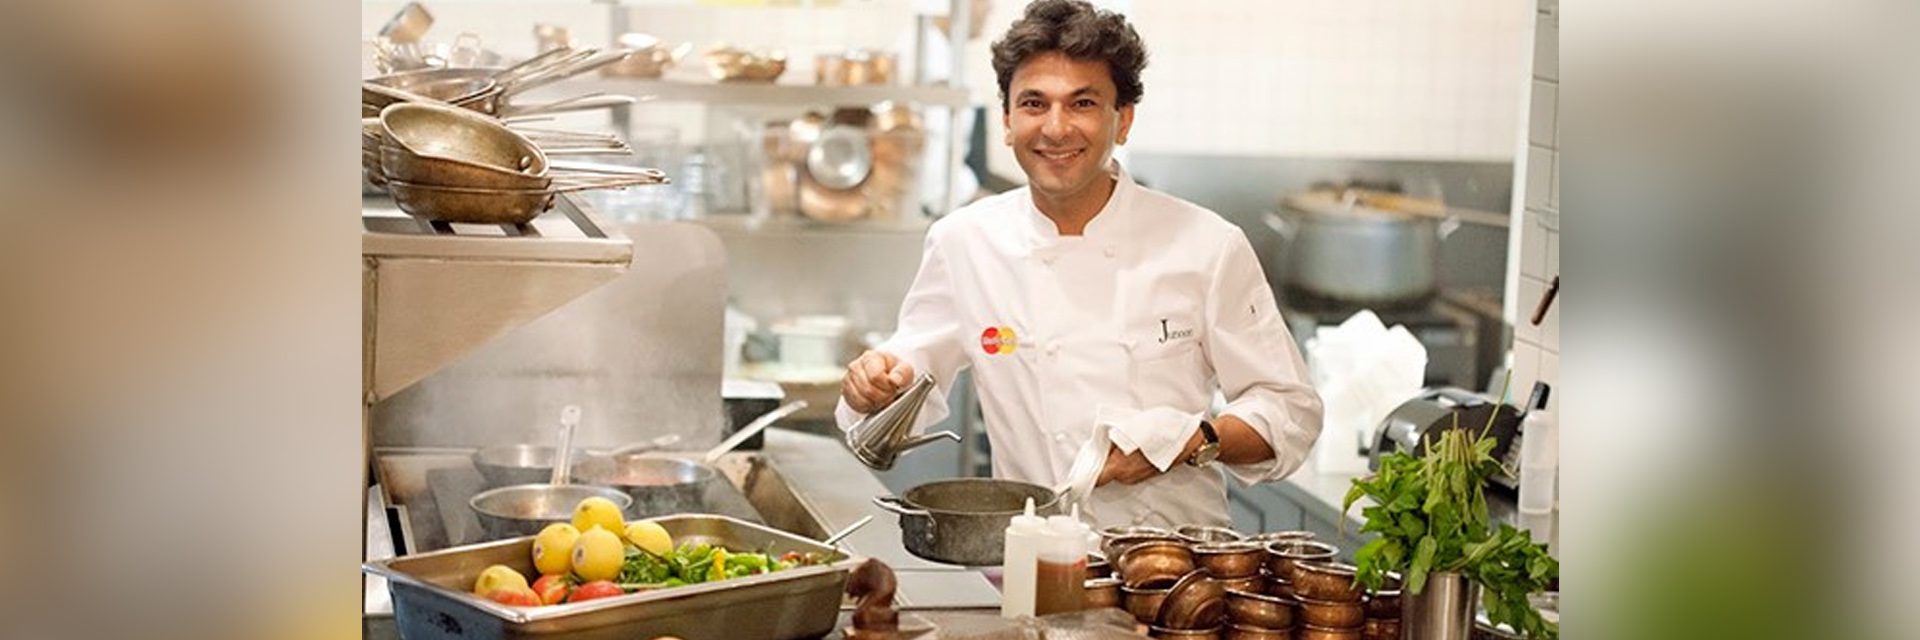 Шеф-повар Викас Кханна, обладатель звезды Мишлен, сочетает в себе вычурные истории и сострадание